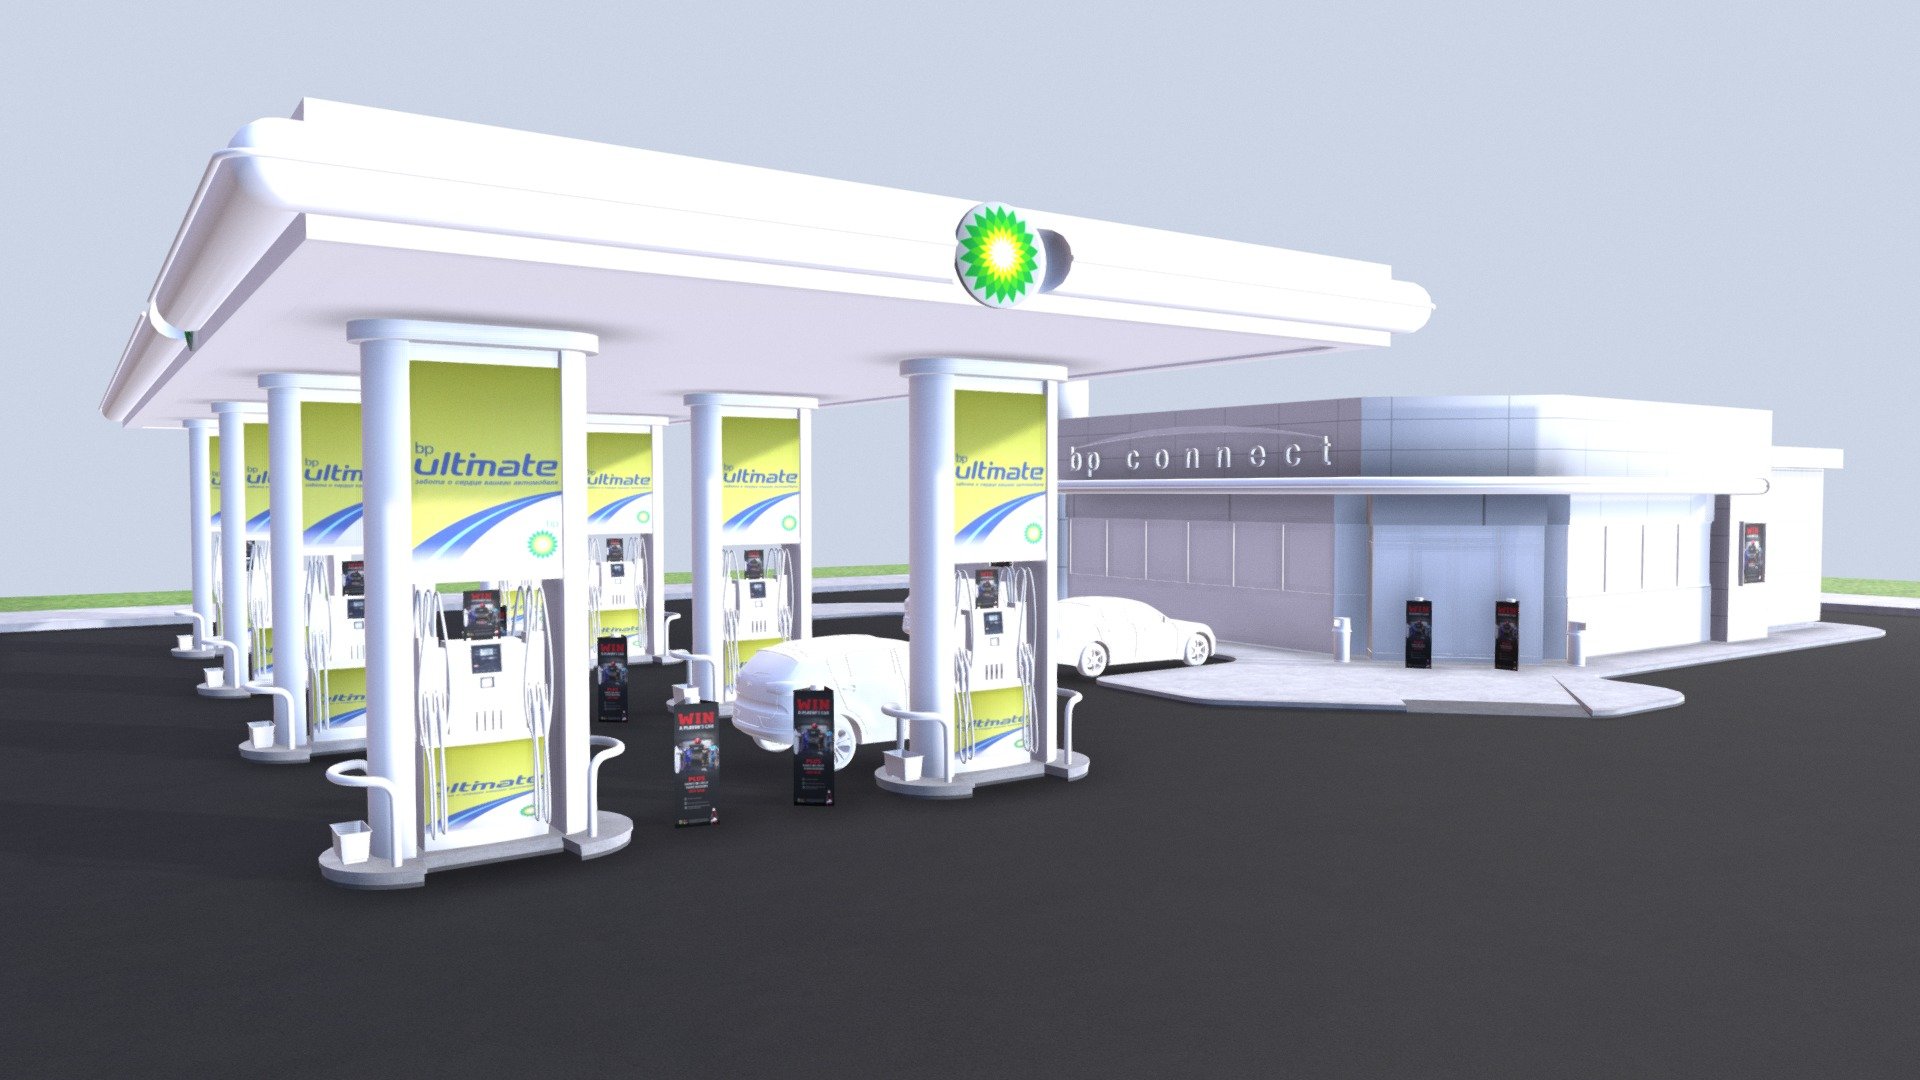 Petrol Station - 3D model by Rich Content (@dougrichardson) 3d model